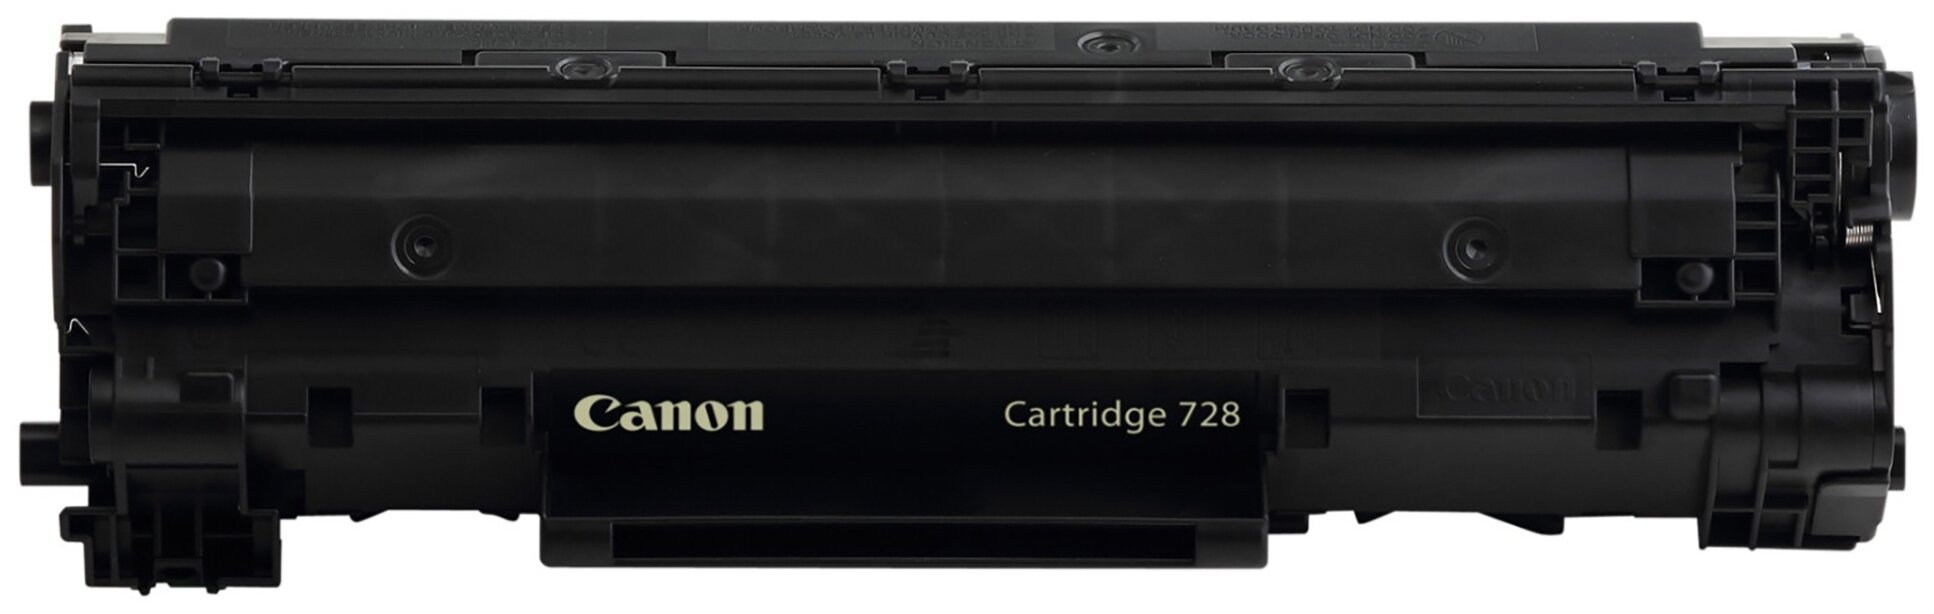 Картридж C-728 (CE278A) для принтера Canon i-SENSYS MF4780w; MF4870dn; MF4890dw; MF4570dn